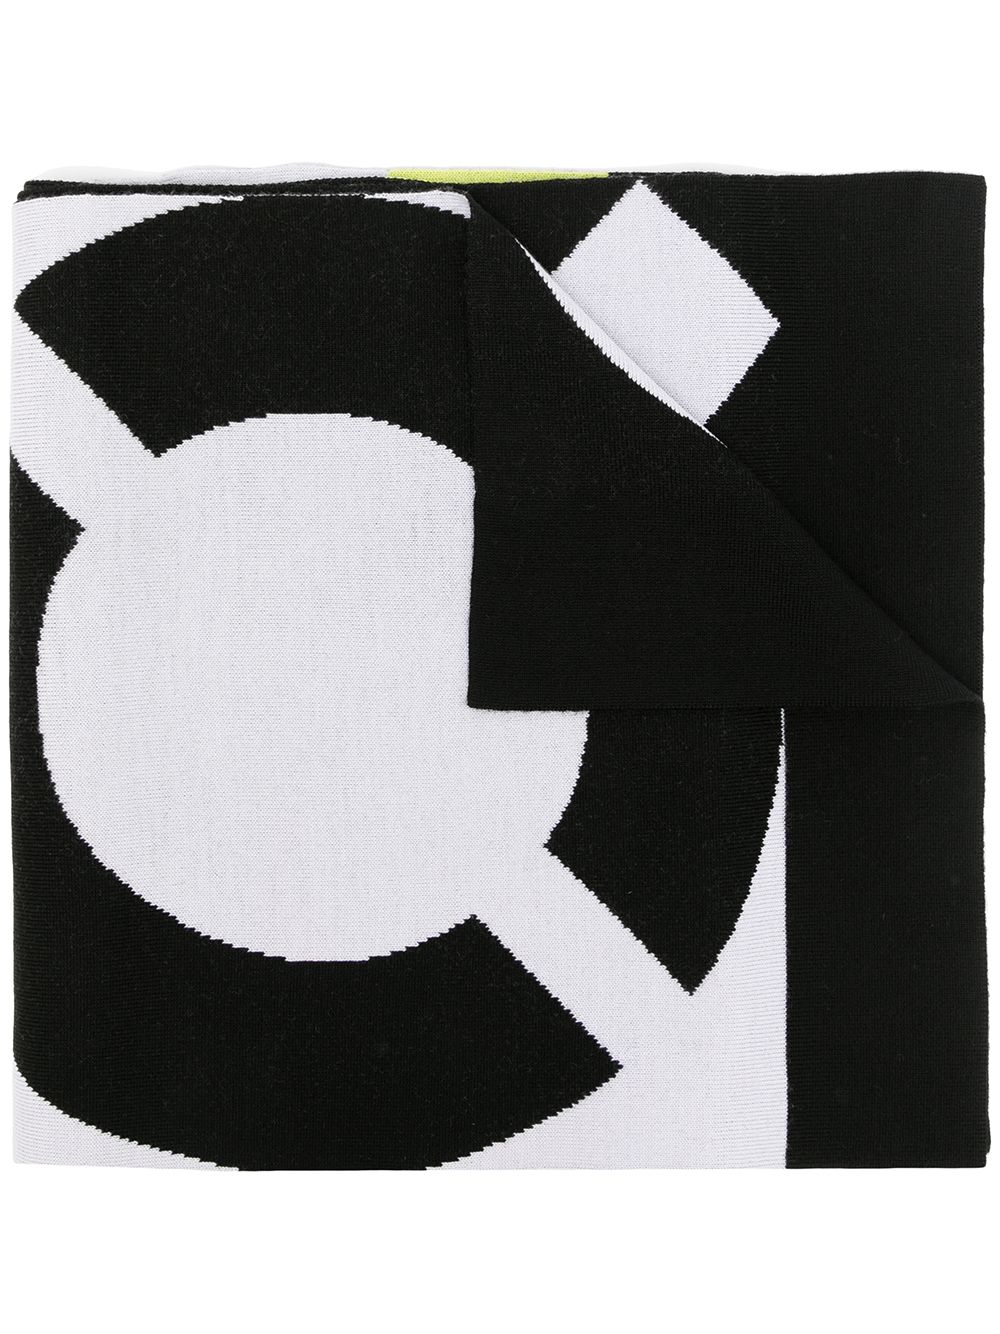 шарф с логотипом Kenzo 16821396636363633263